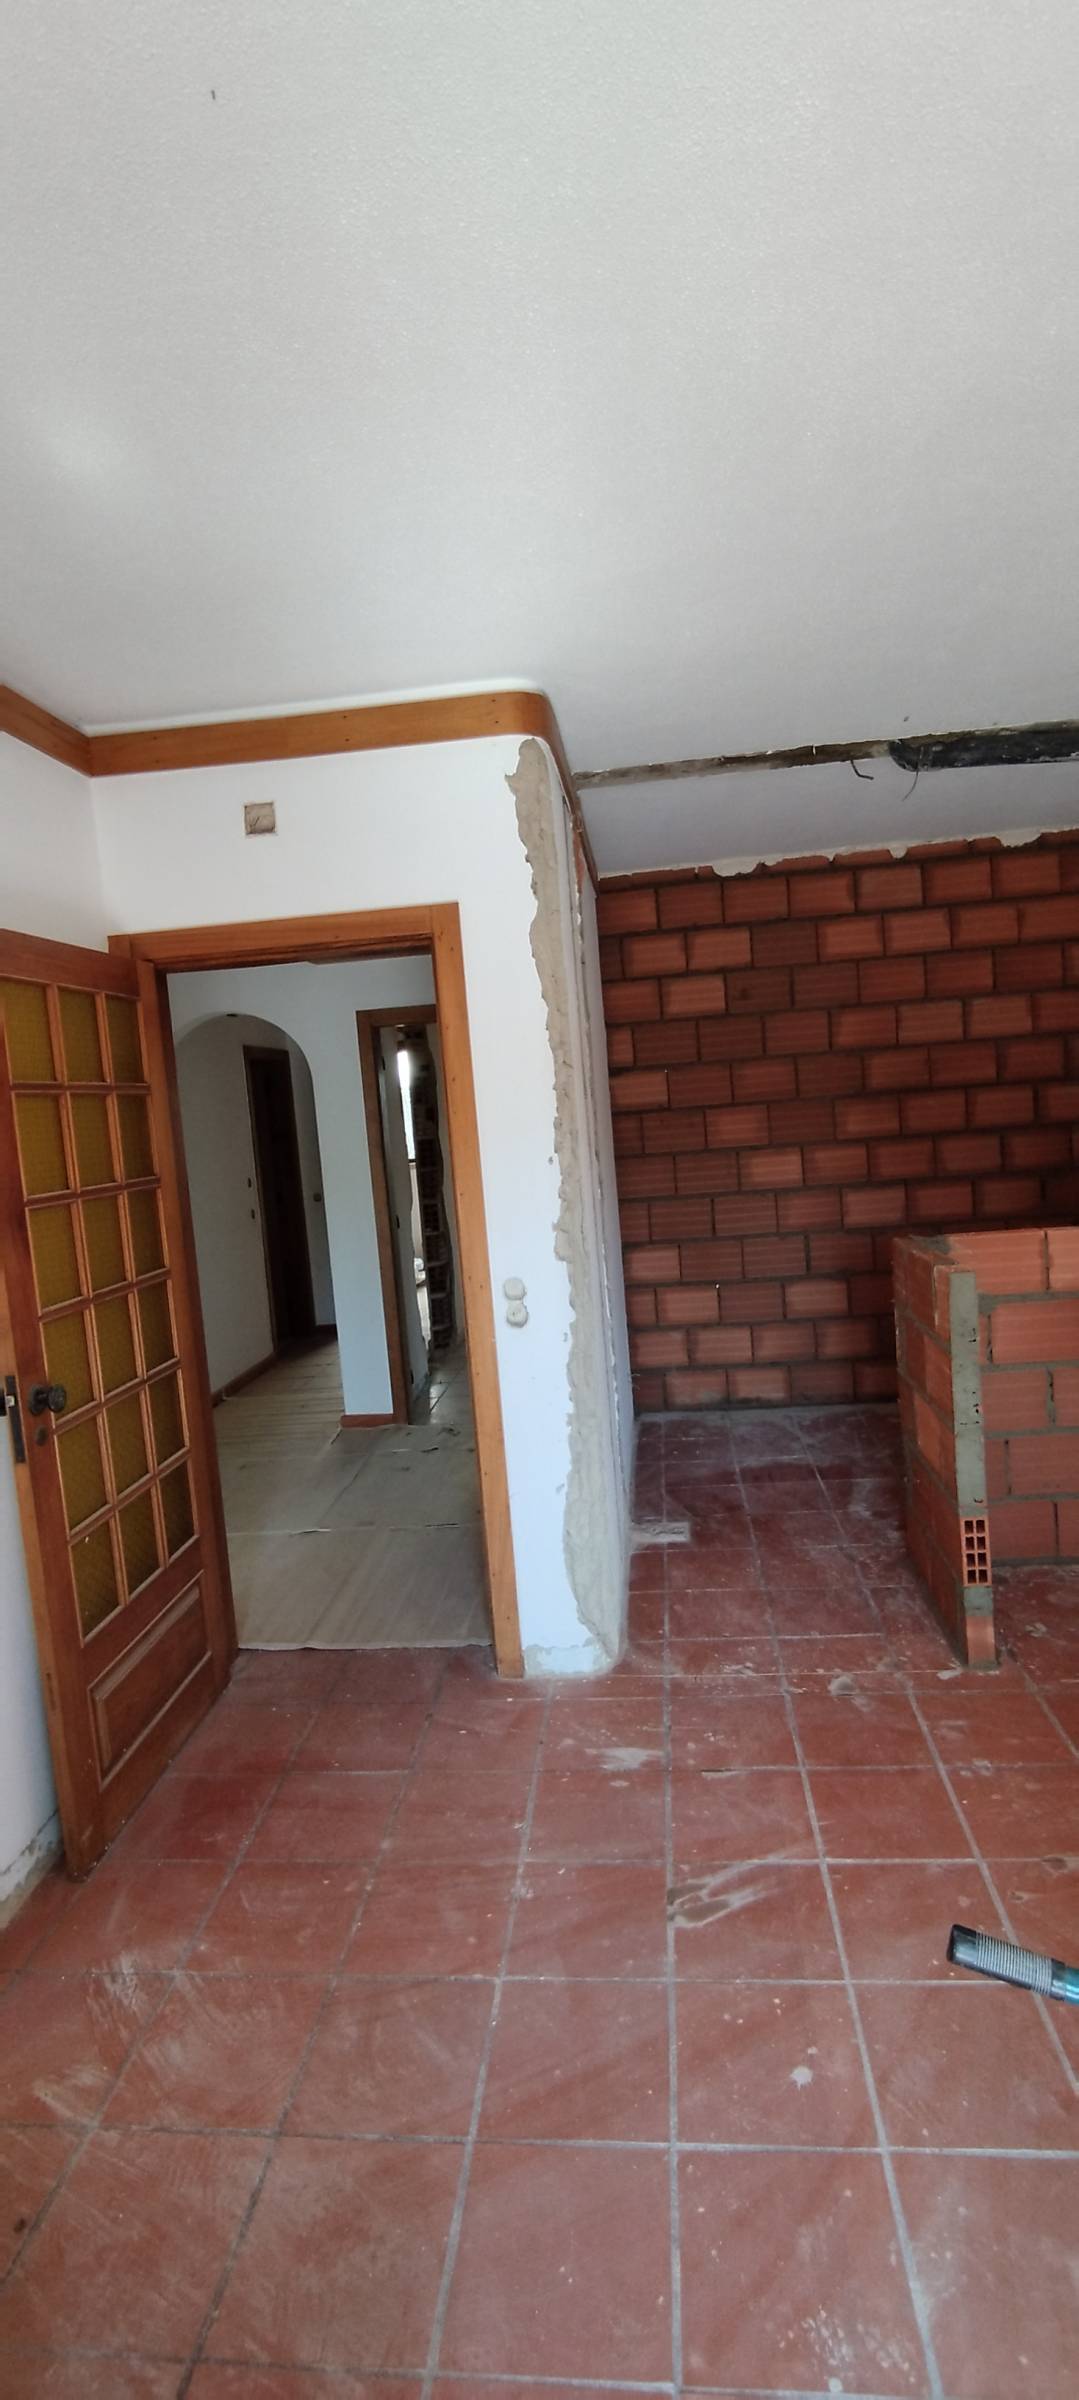 Araújo Remodelações - Cascais - Remodelação da Casa